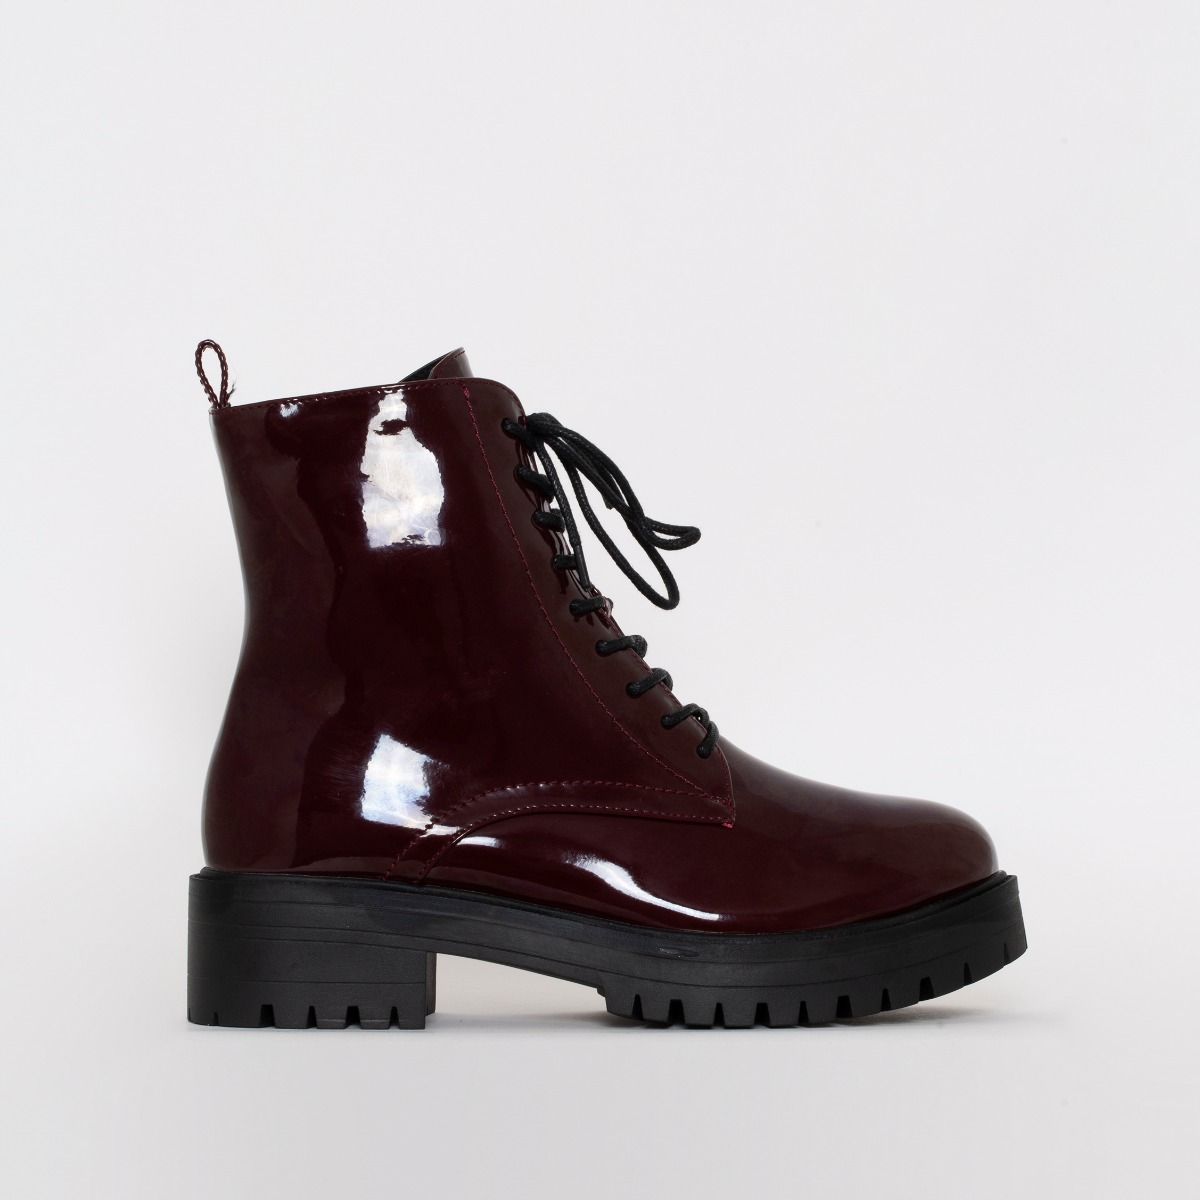 maroon flat boots